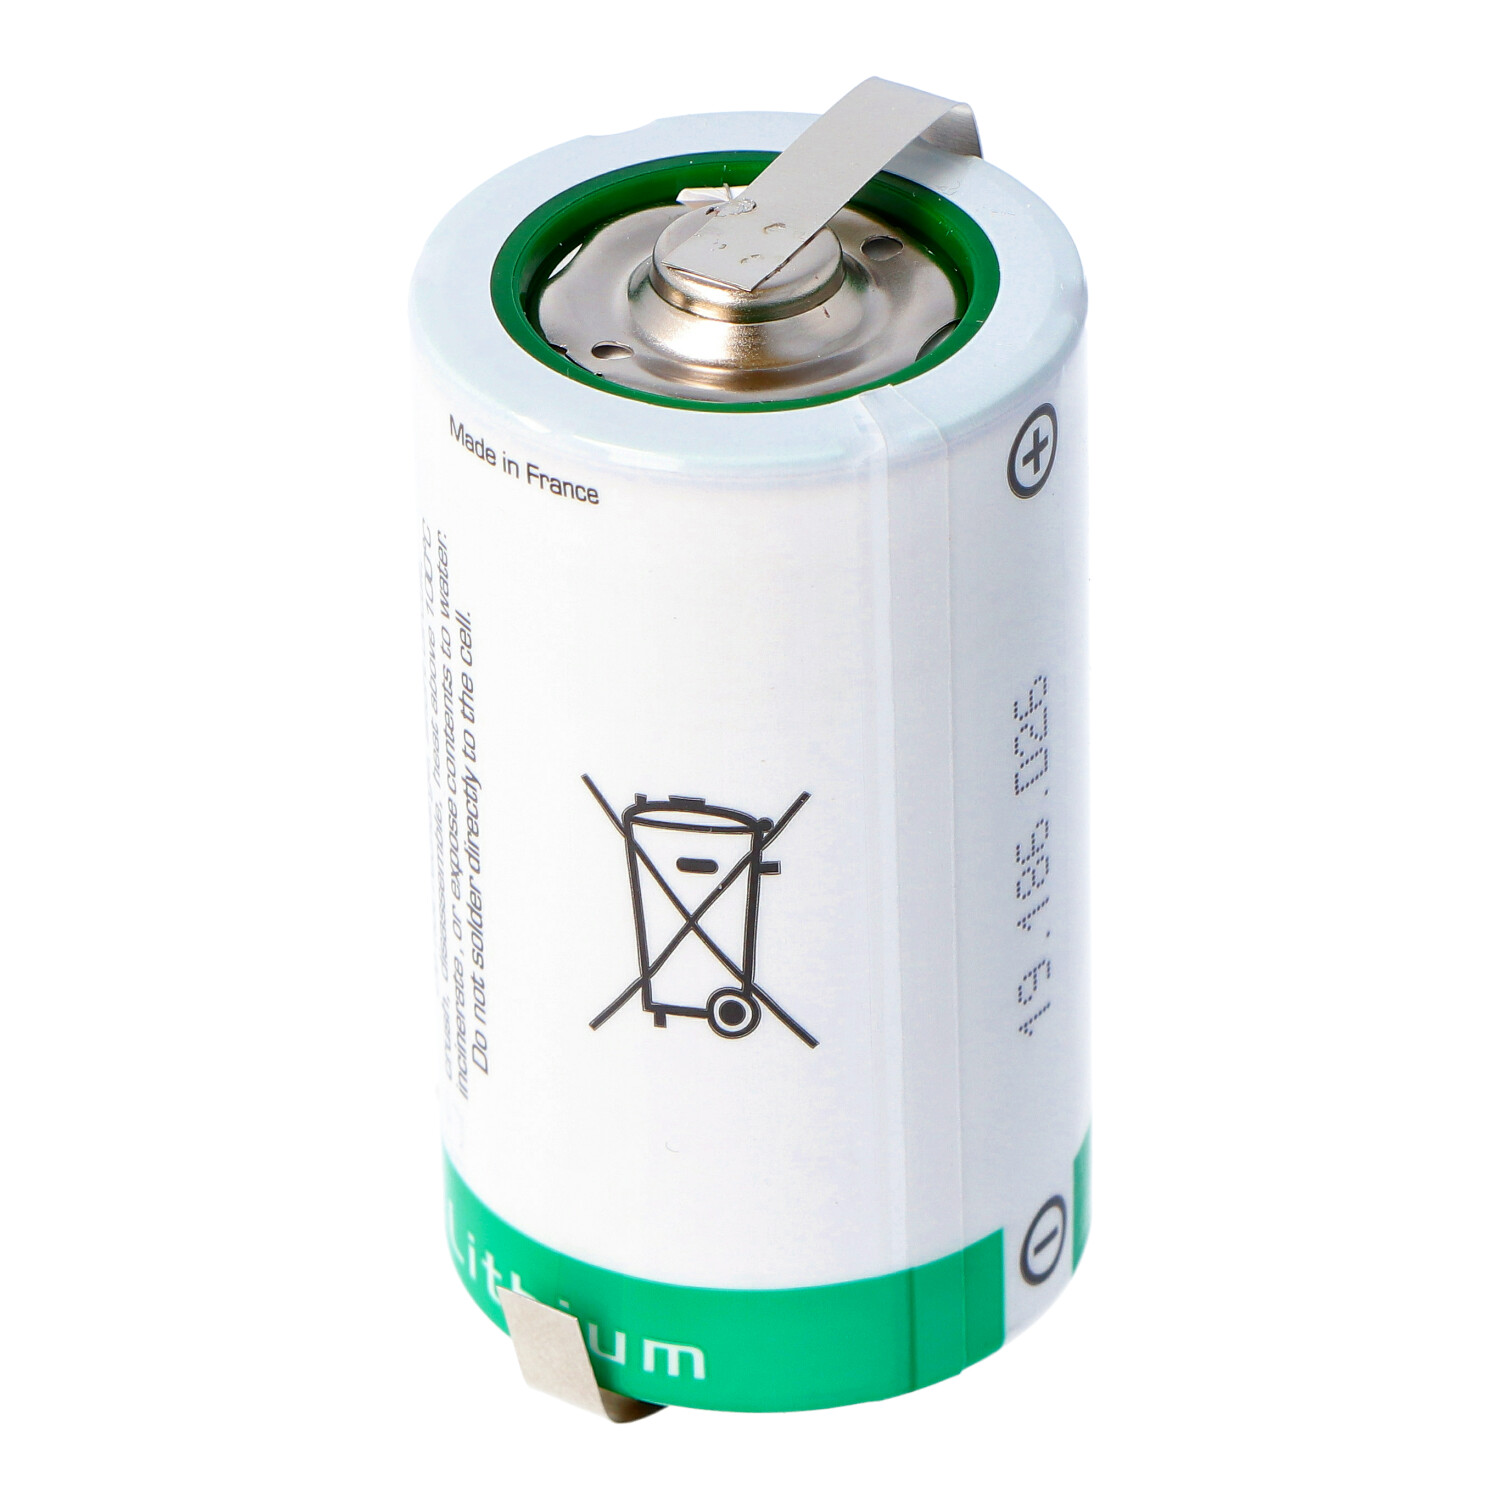 SAFT LSH 20 Lithium Batterie 3.6V Primary LSH20 mit Z-Lötfahnen